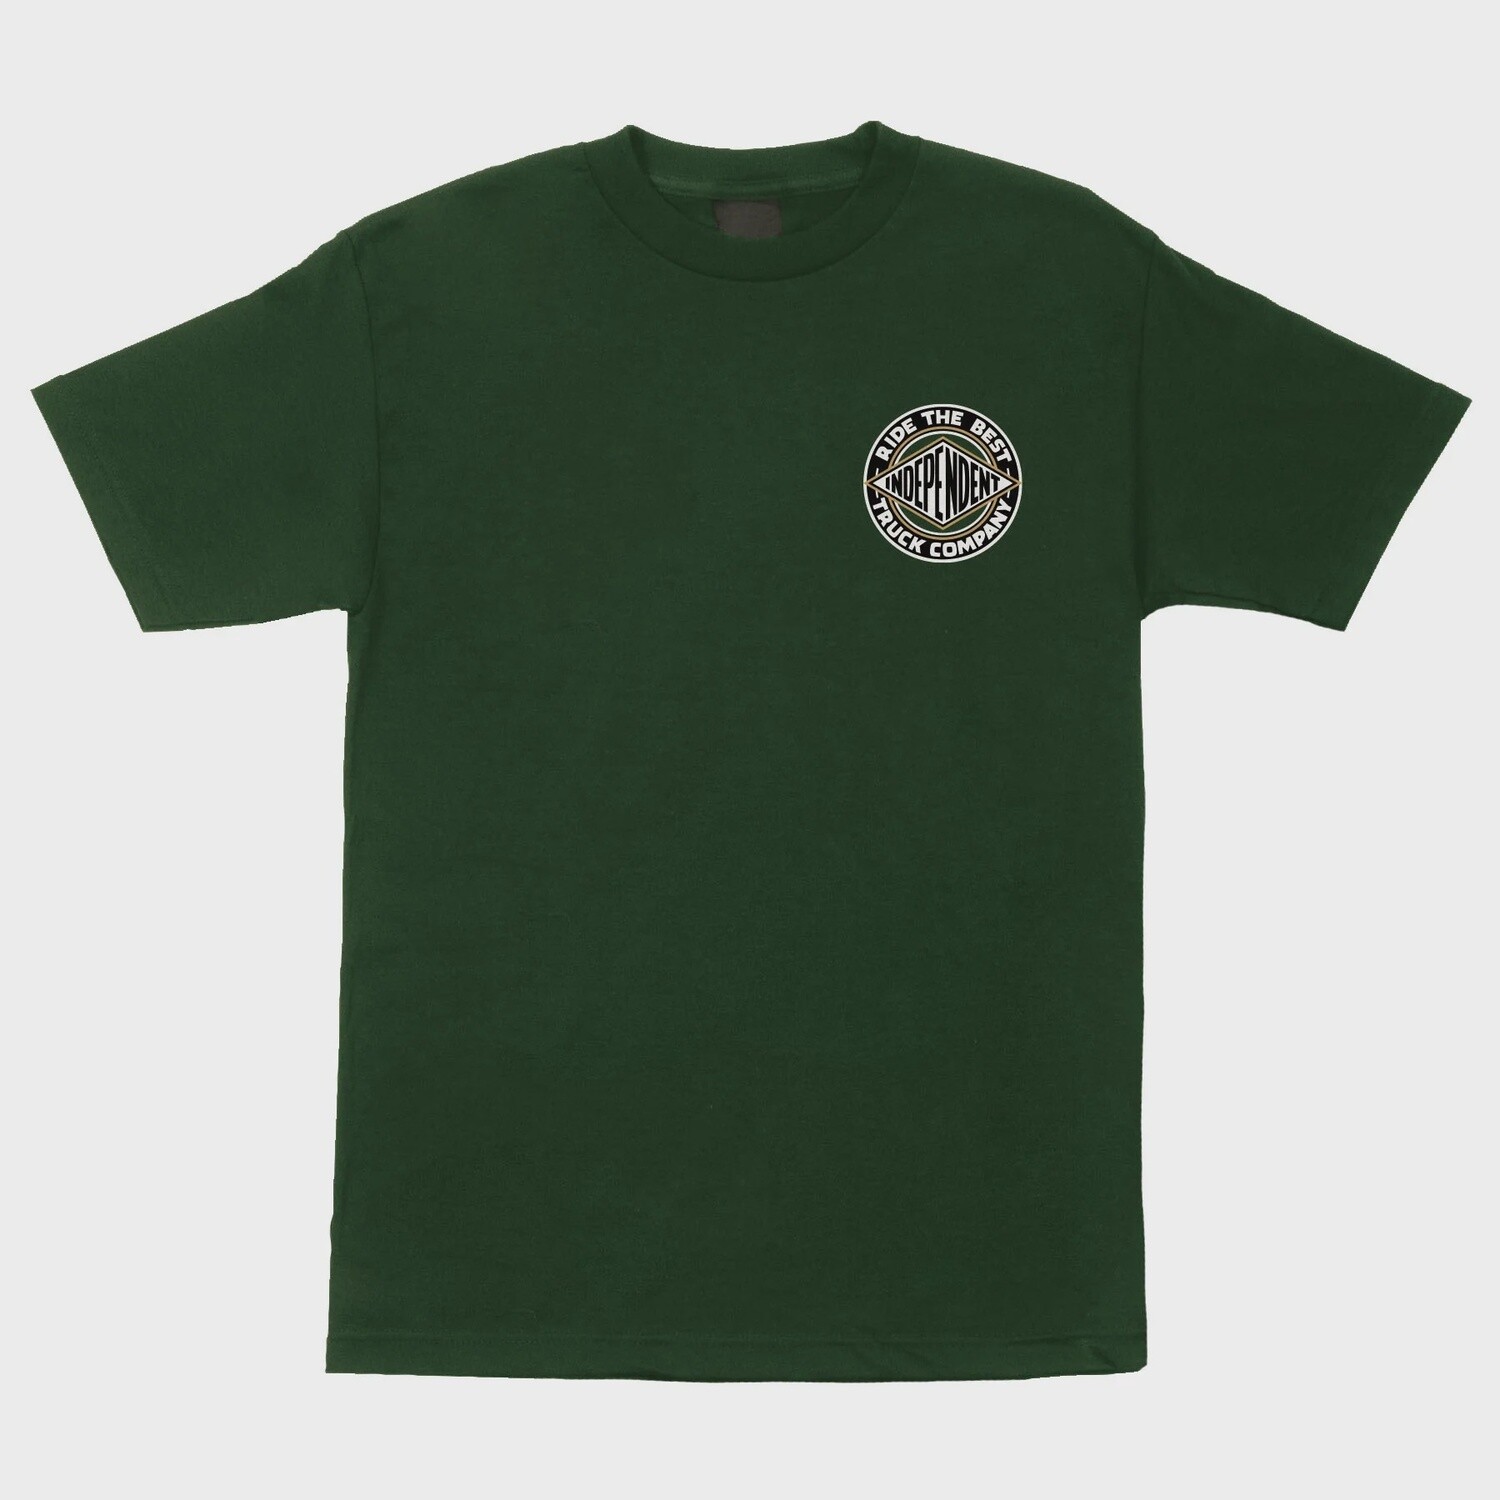 Independent BTG Summit Forest Green T-shirt